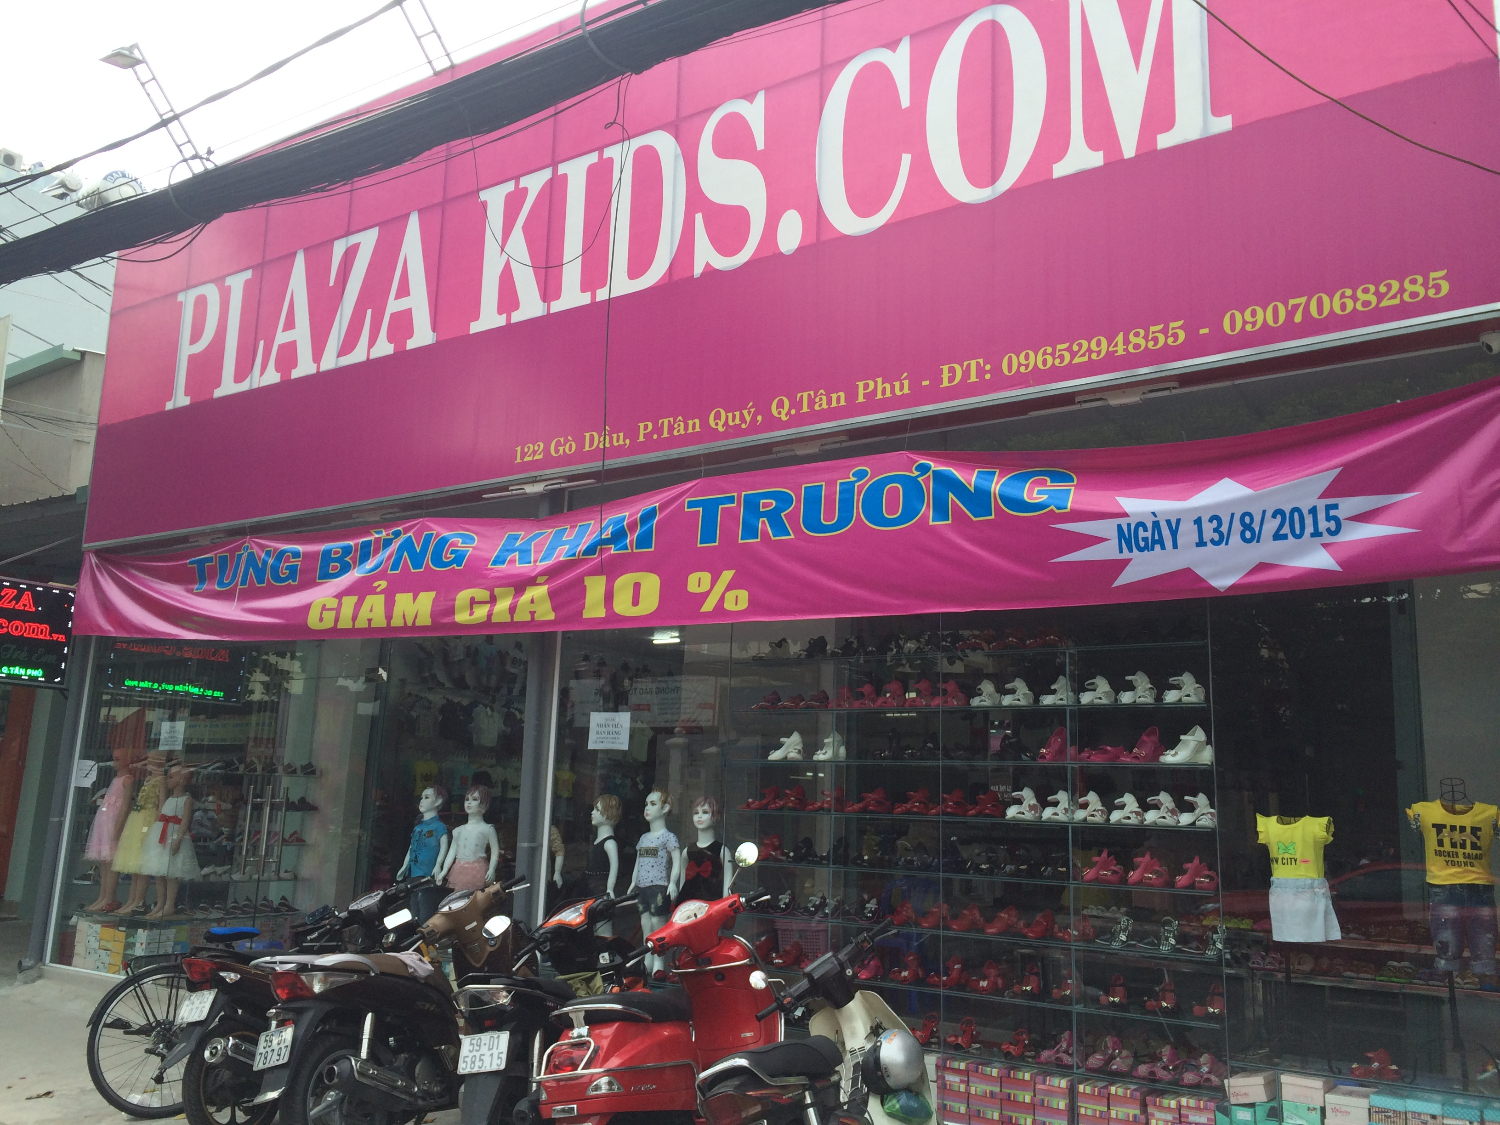 Plaza Kids.com